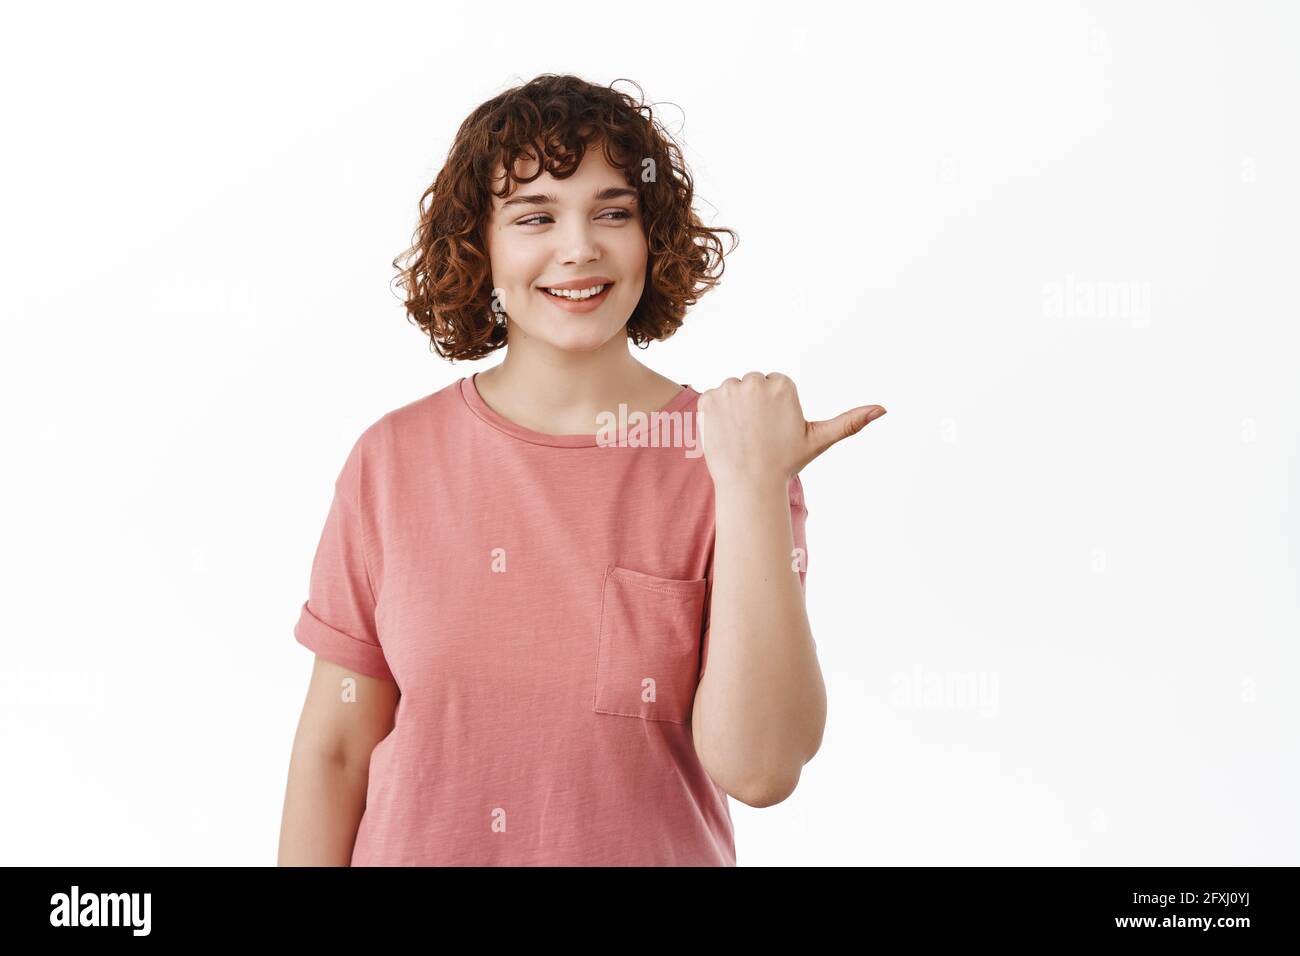 La giovane studentessa in t-shirt guarda a destra, punta il dito alla pubblicità con il volto speranzoso pensieroso, sorridente soddisfatto e felice, in piedi su bianco Foto Stock